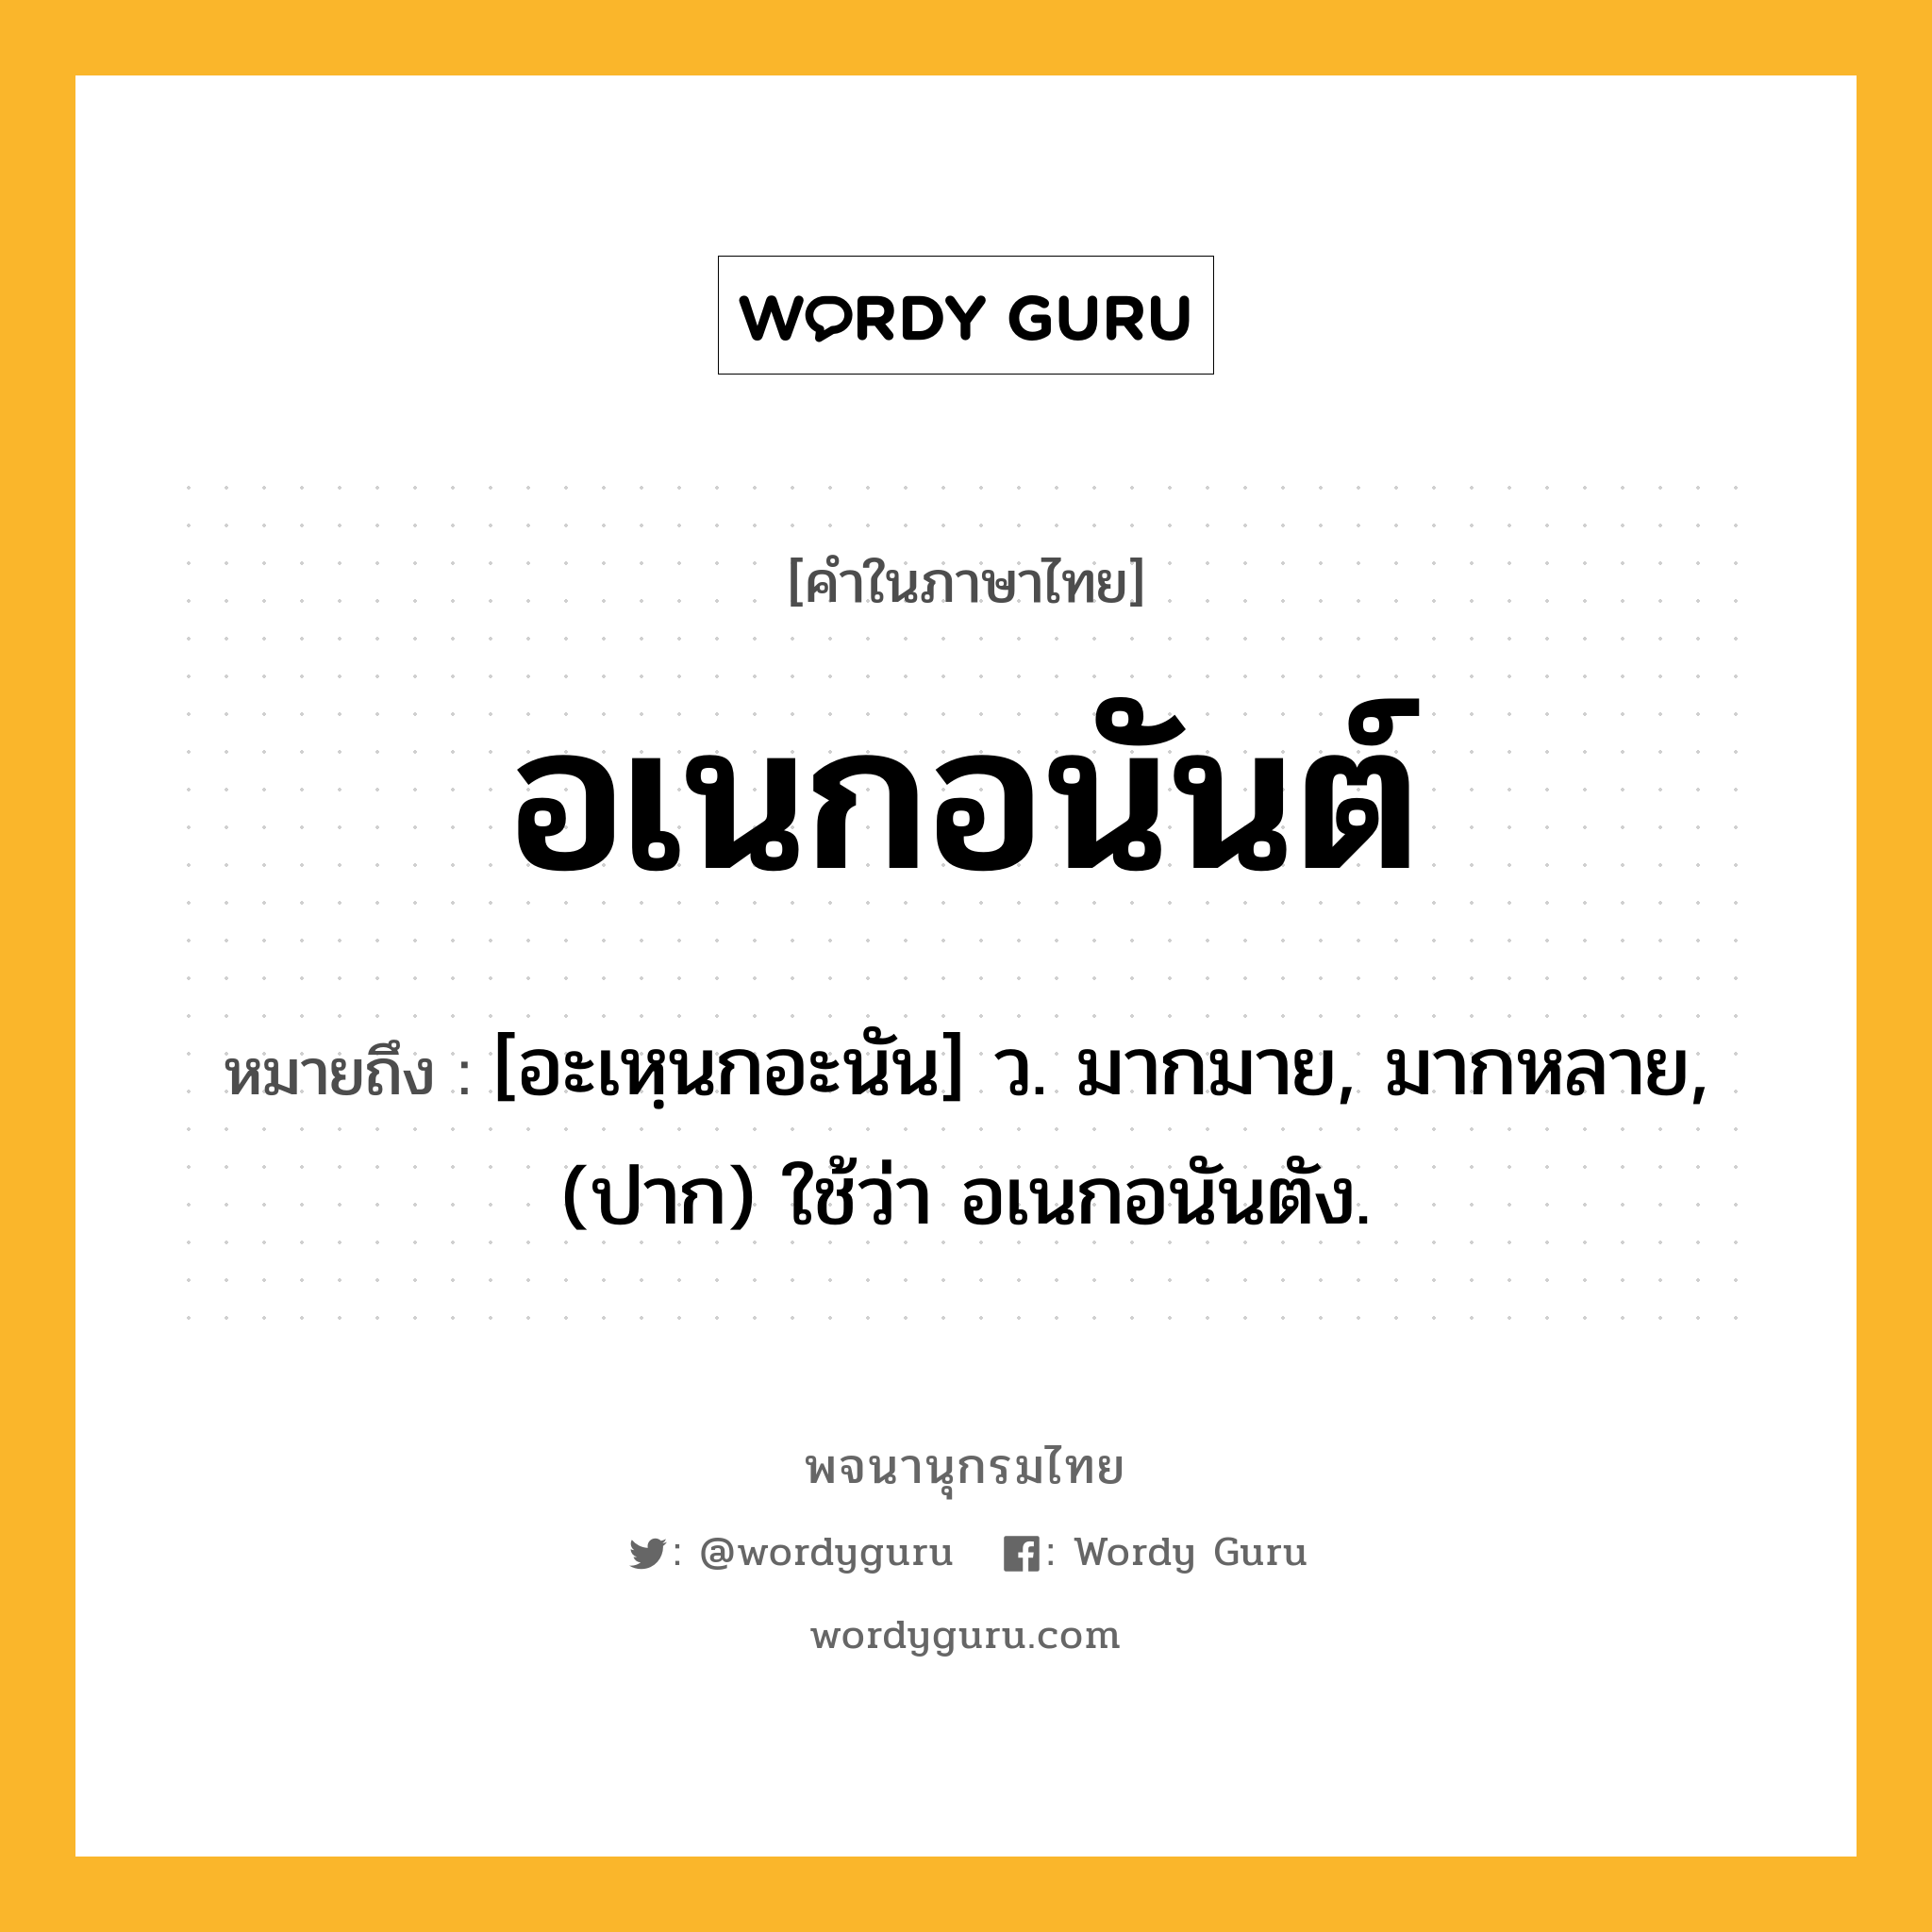 อเนกอนันต์ หมายถึงอะไร?, คำในภาษาไทย อเนกอนันต์ หมายถึง [อะเหฺนกอะนัน] ว. มากมาย, มากหลาย, (ปาก) ใช้ว่า อเนกอนันตัง.